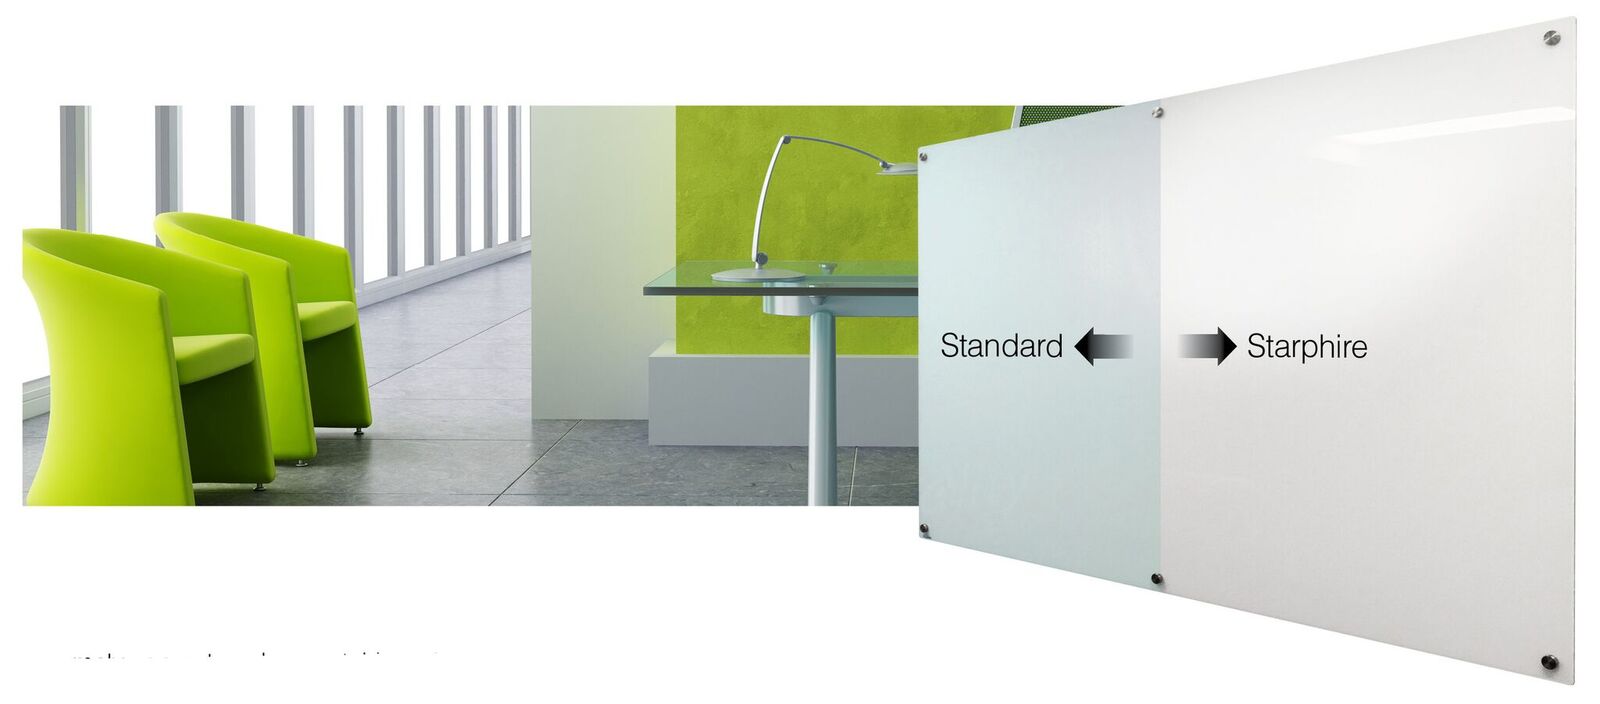 Standard Glass VS Starphire Glass Comparison